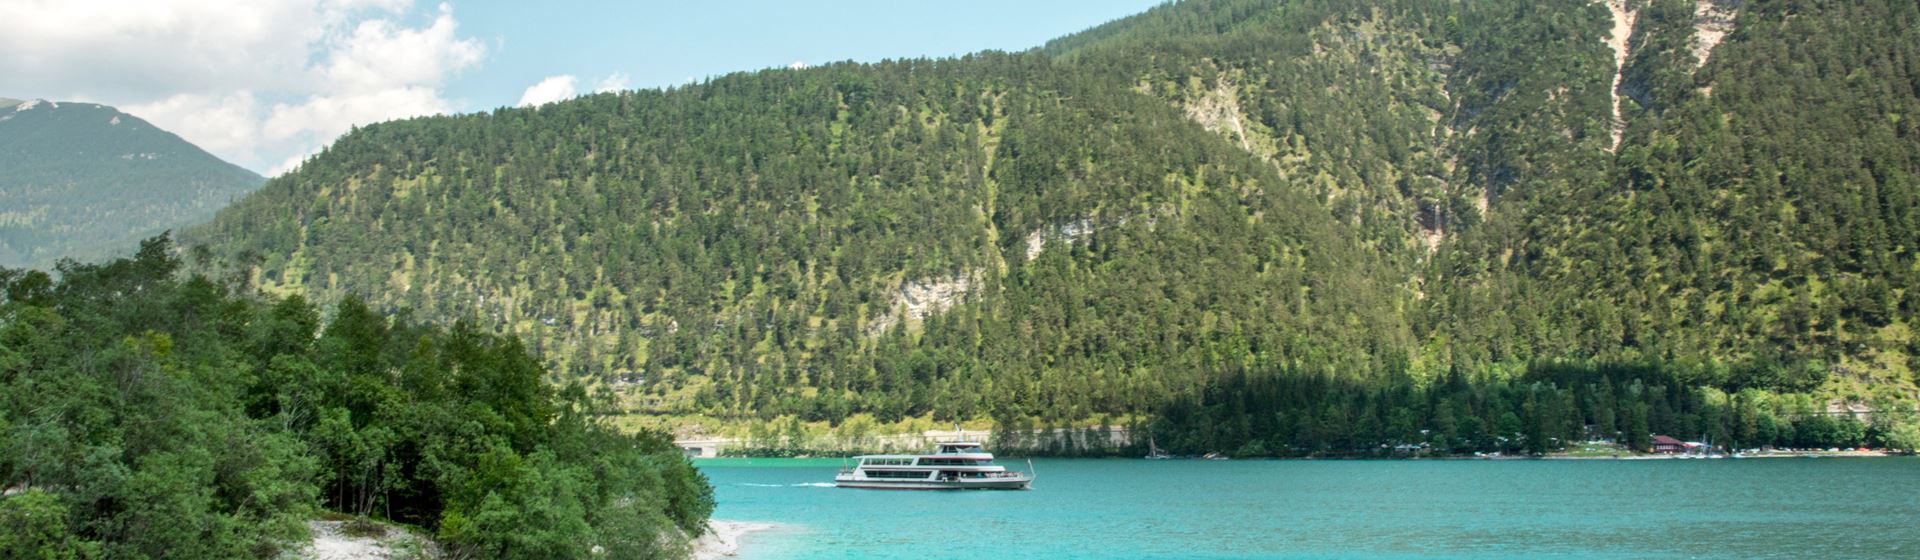 Een boot vaart op de blauwe Achensee in Oostenrijk. Op de achtergrond zijn een begroeide heuvel en een blauwe lucht te zien.